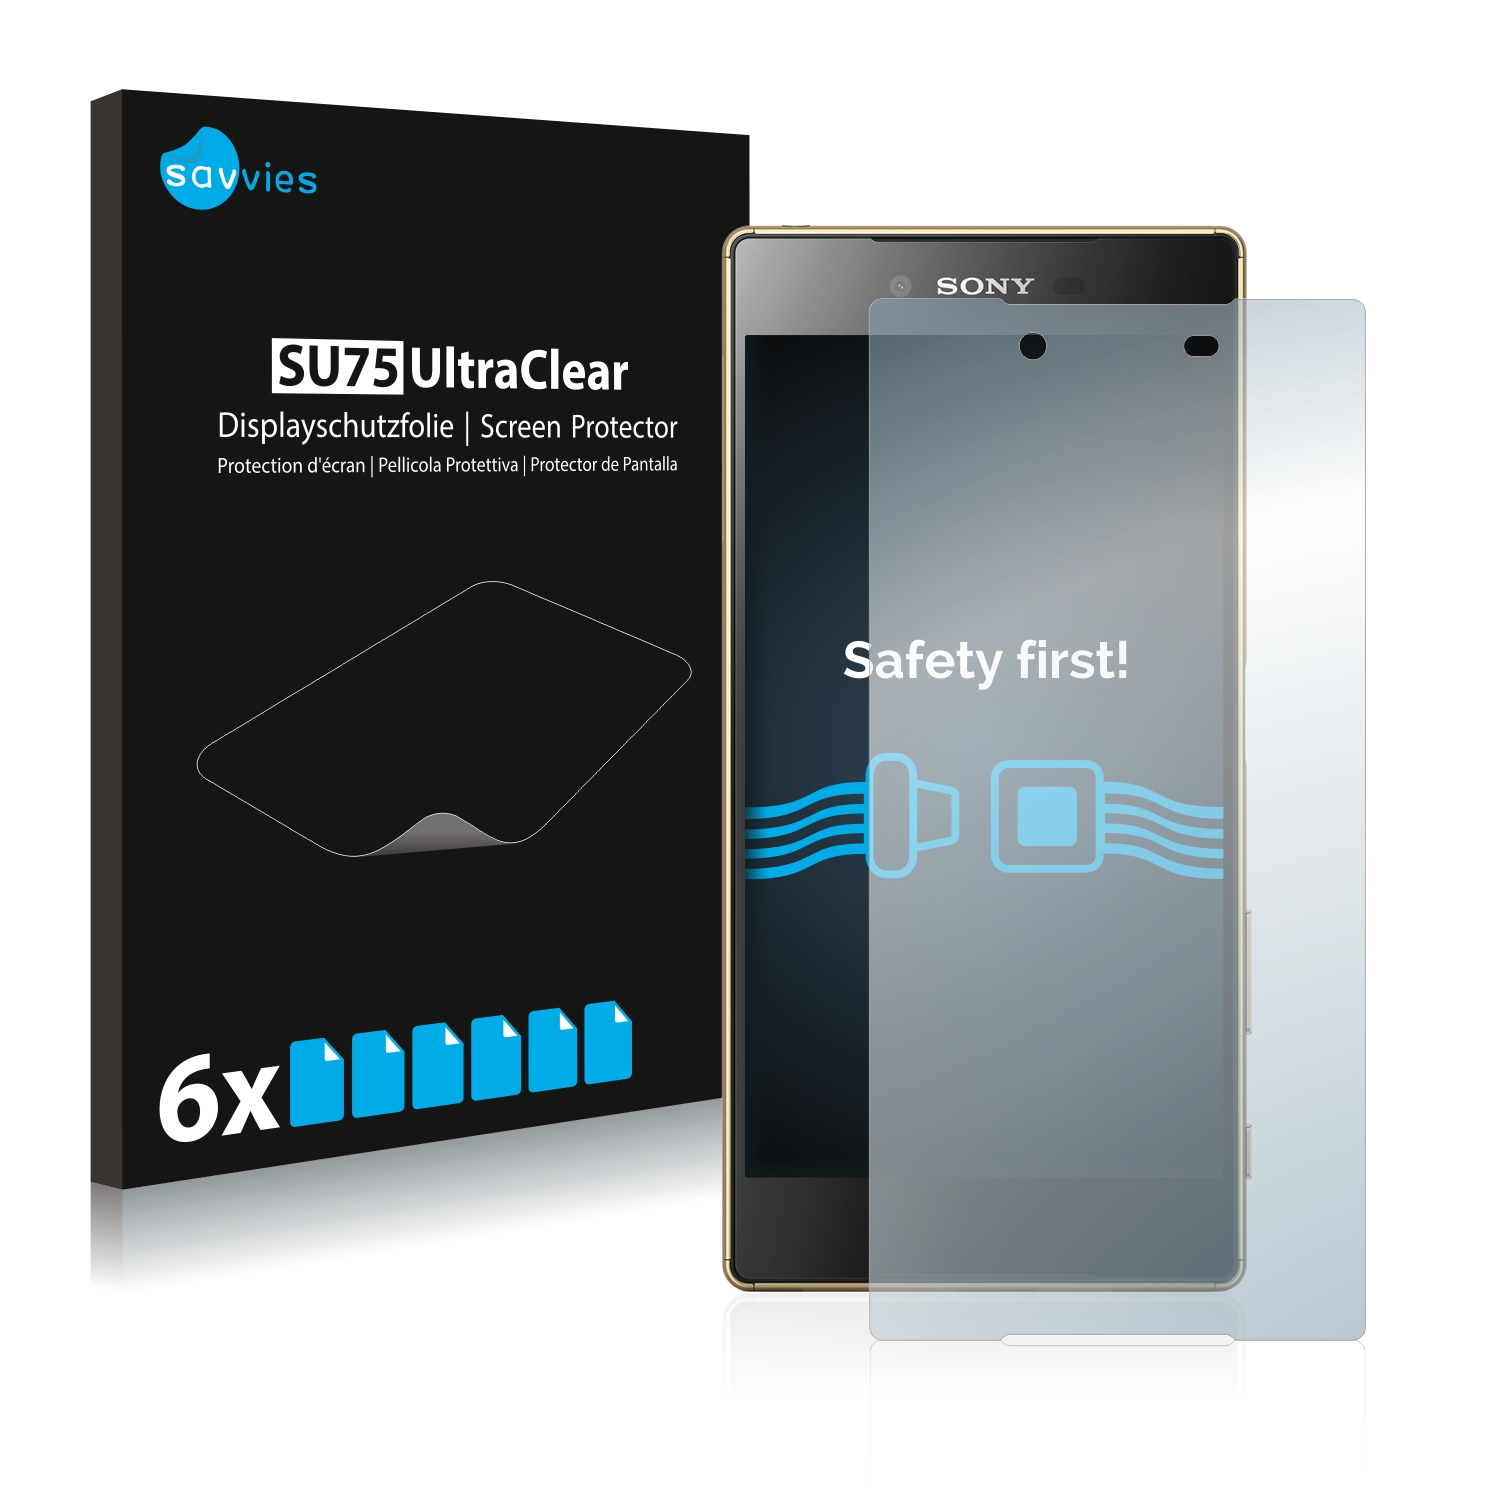 6x Savvies SU75 čirá ochranná fólie pro Sony Xperia Z5 Premium